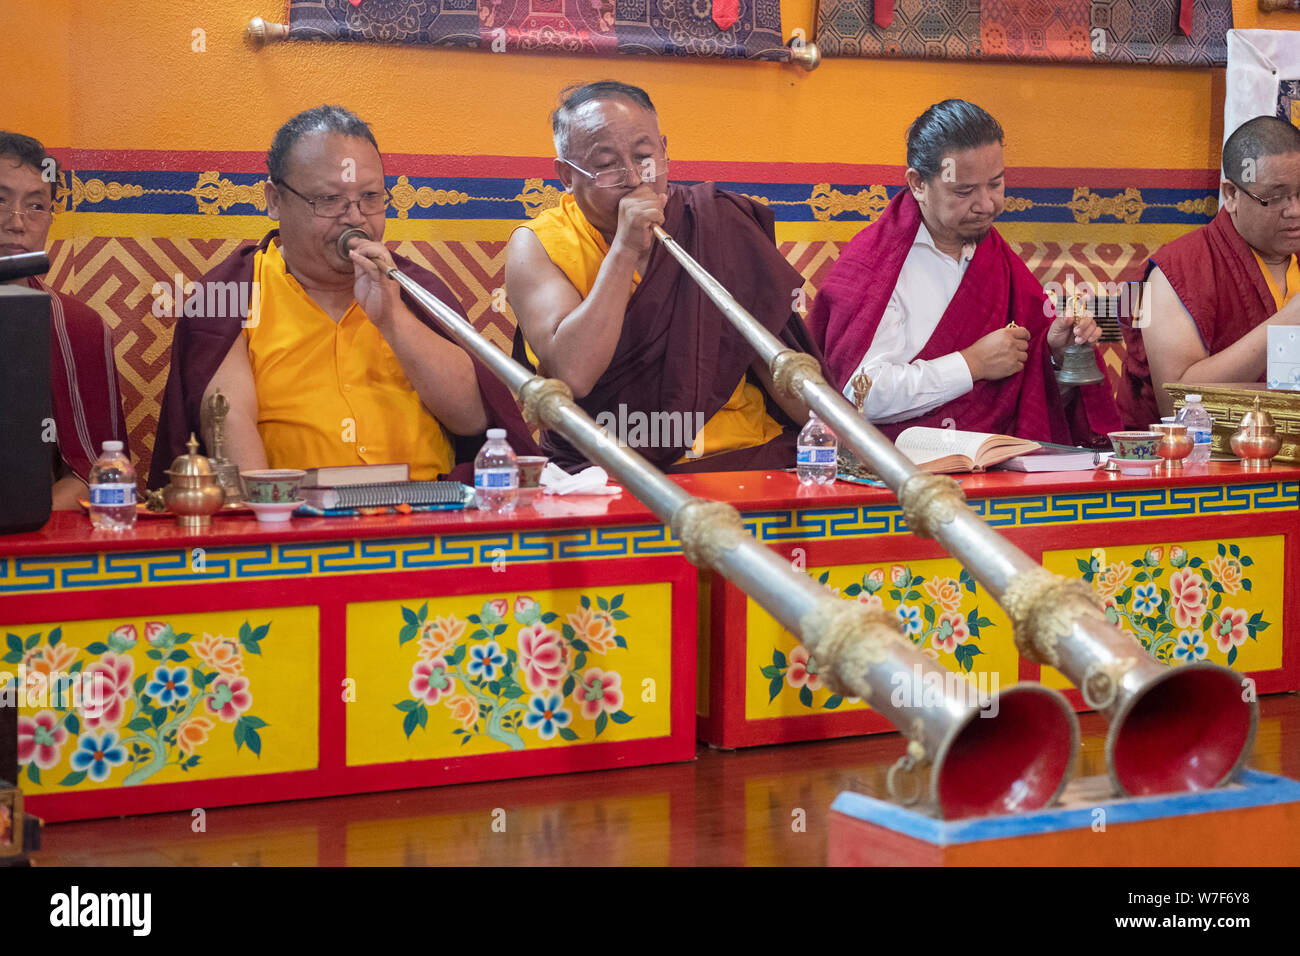 Les moines bouddhistes népalais jouer les dungchen longue corne traditionnels pendant un service de prière. Au temple Kyidug Sherpa dans NYC. Banque D'Images